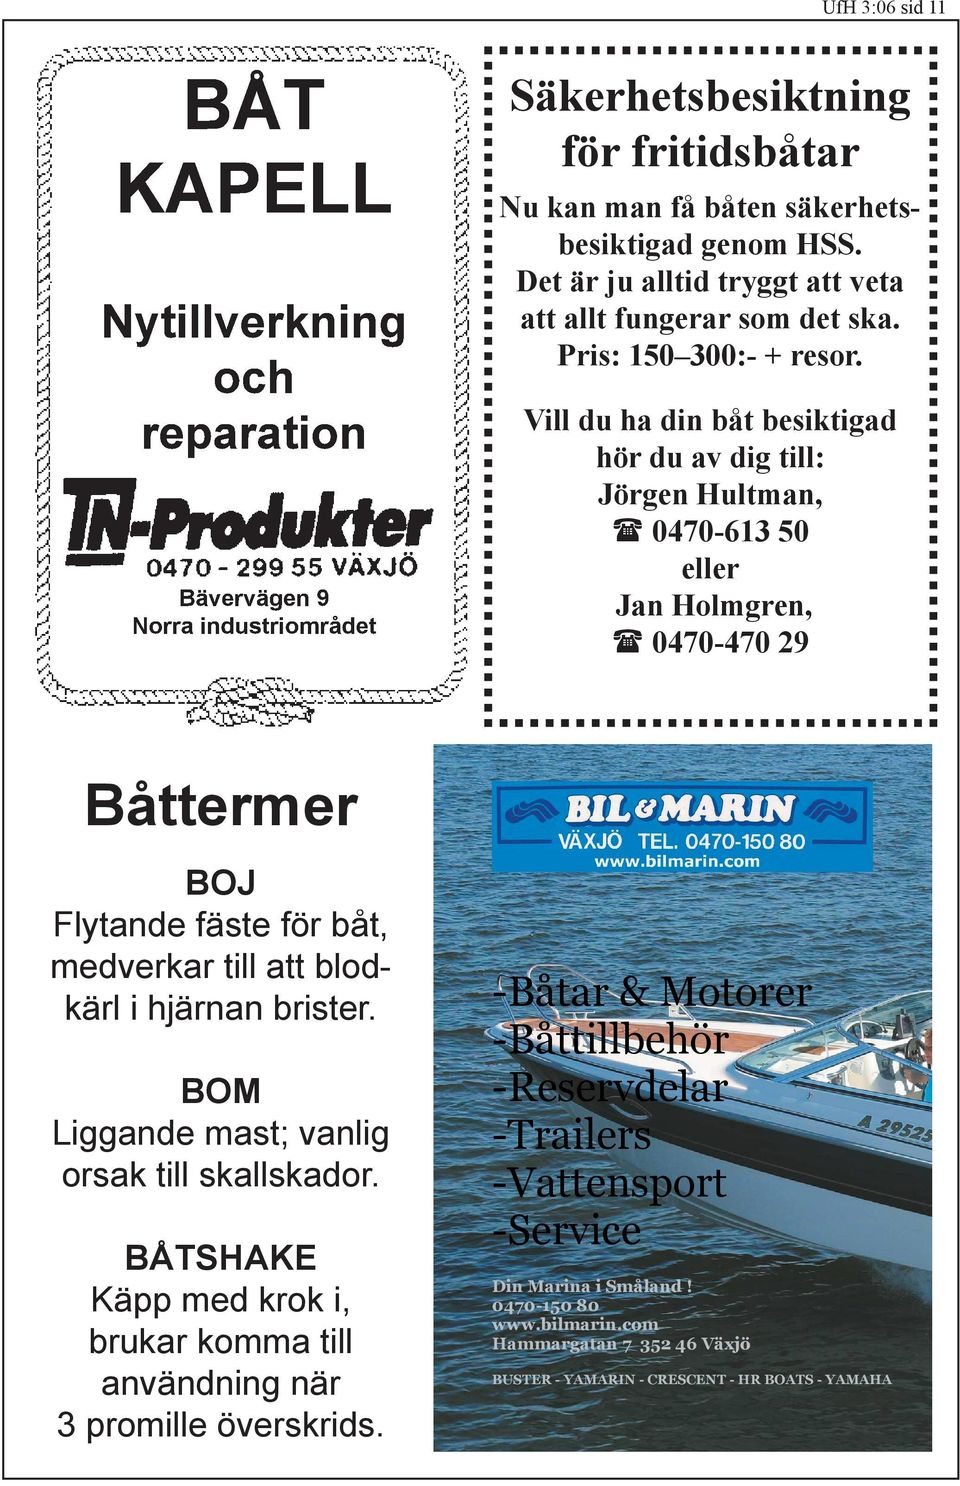 Vill du ha din båt besiktigad hör du av dig till: Jörgen Hultman, 0470-613 50 eller Jan Holmgren, 0470-470 29 Båttermer BOJ Flytande fäste för båt, medverkar till att blodkärl i hjärnan brister.